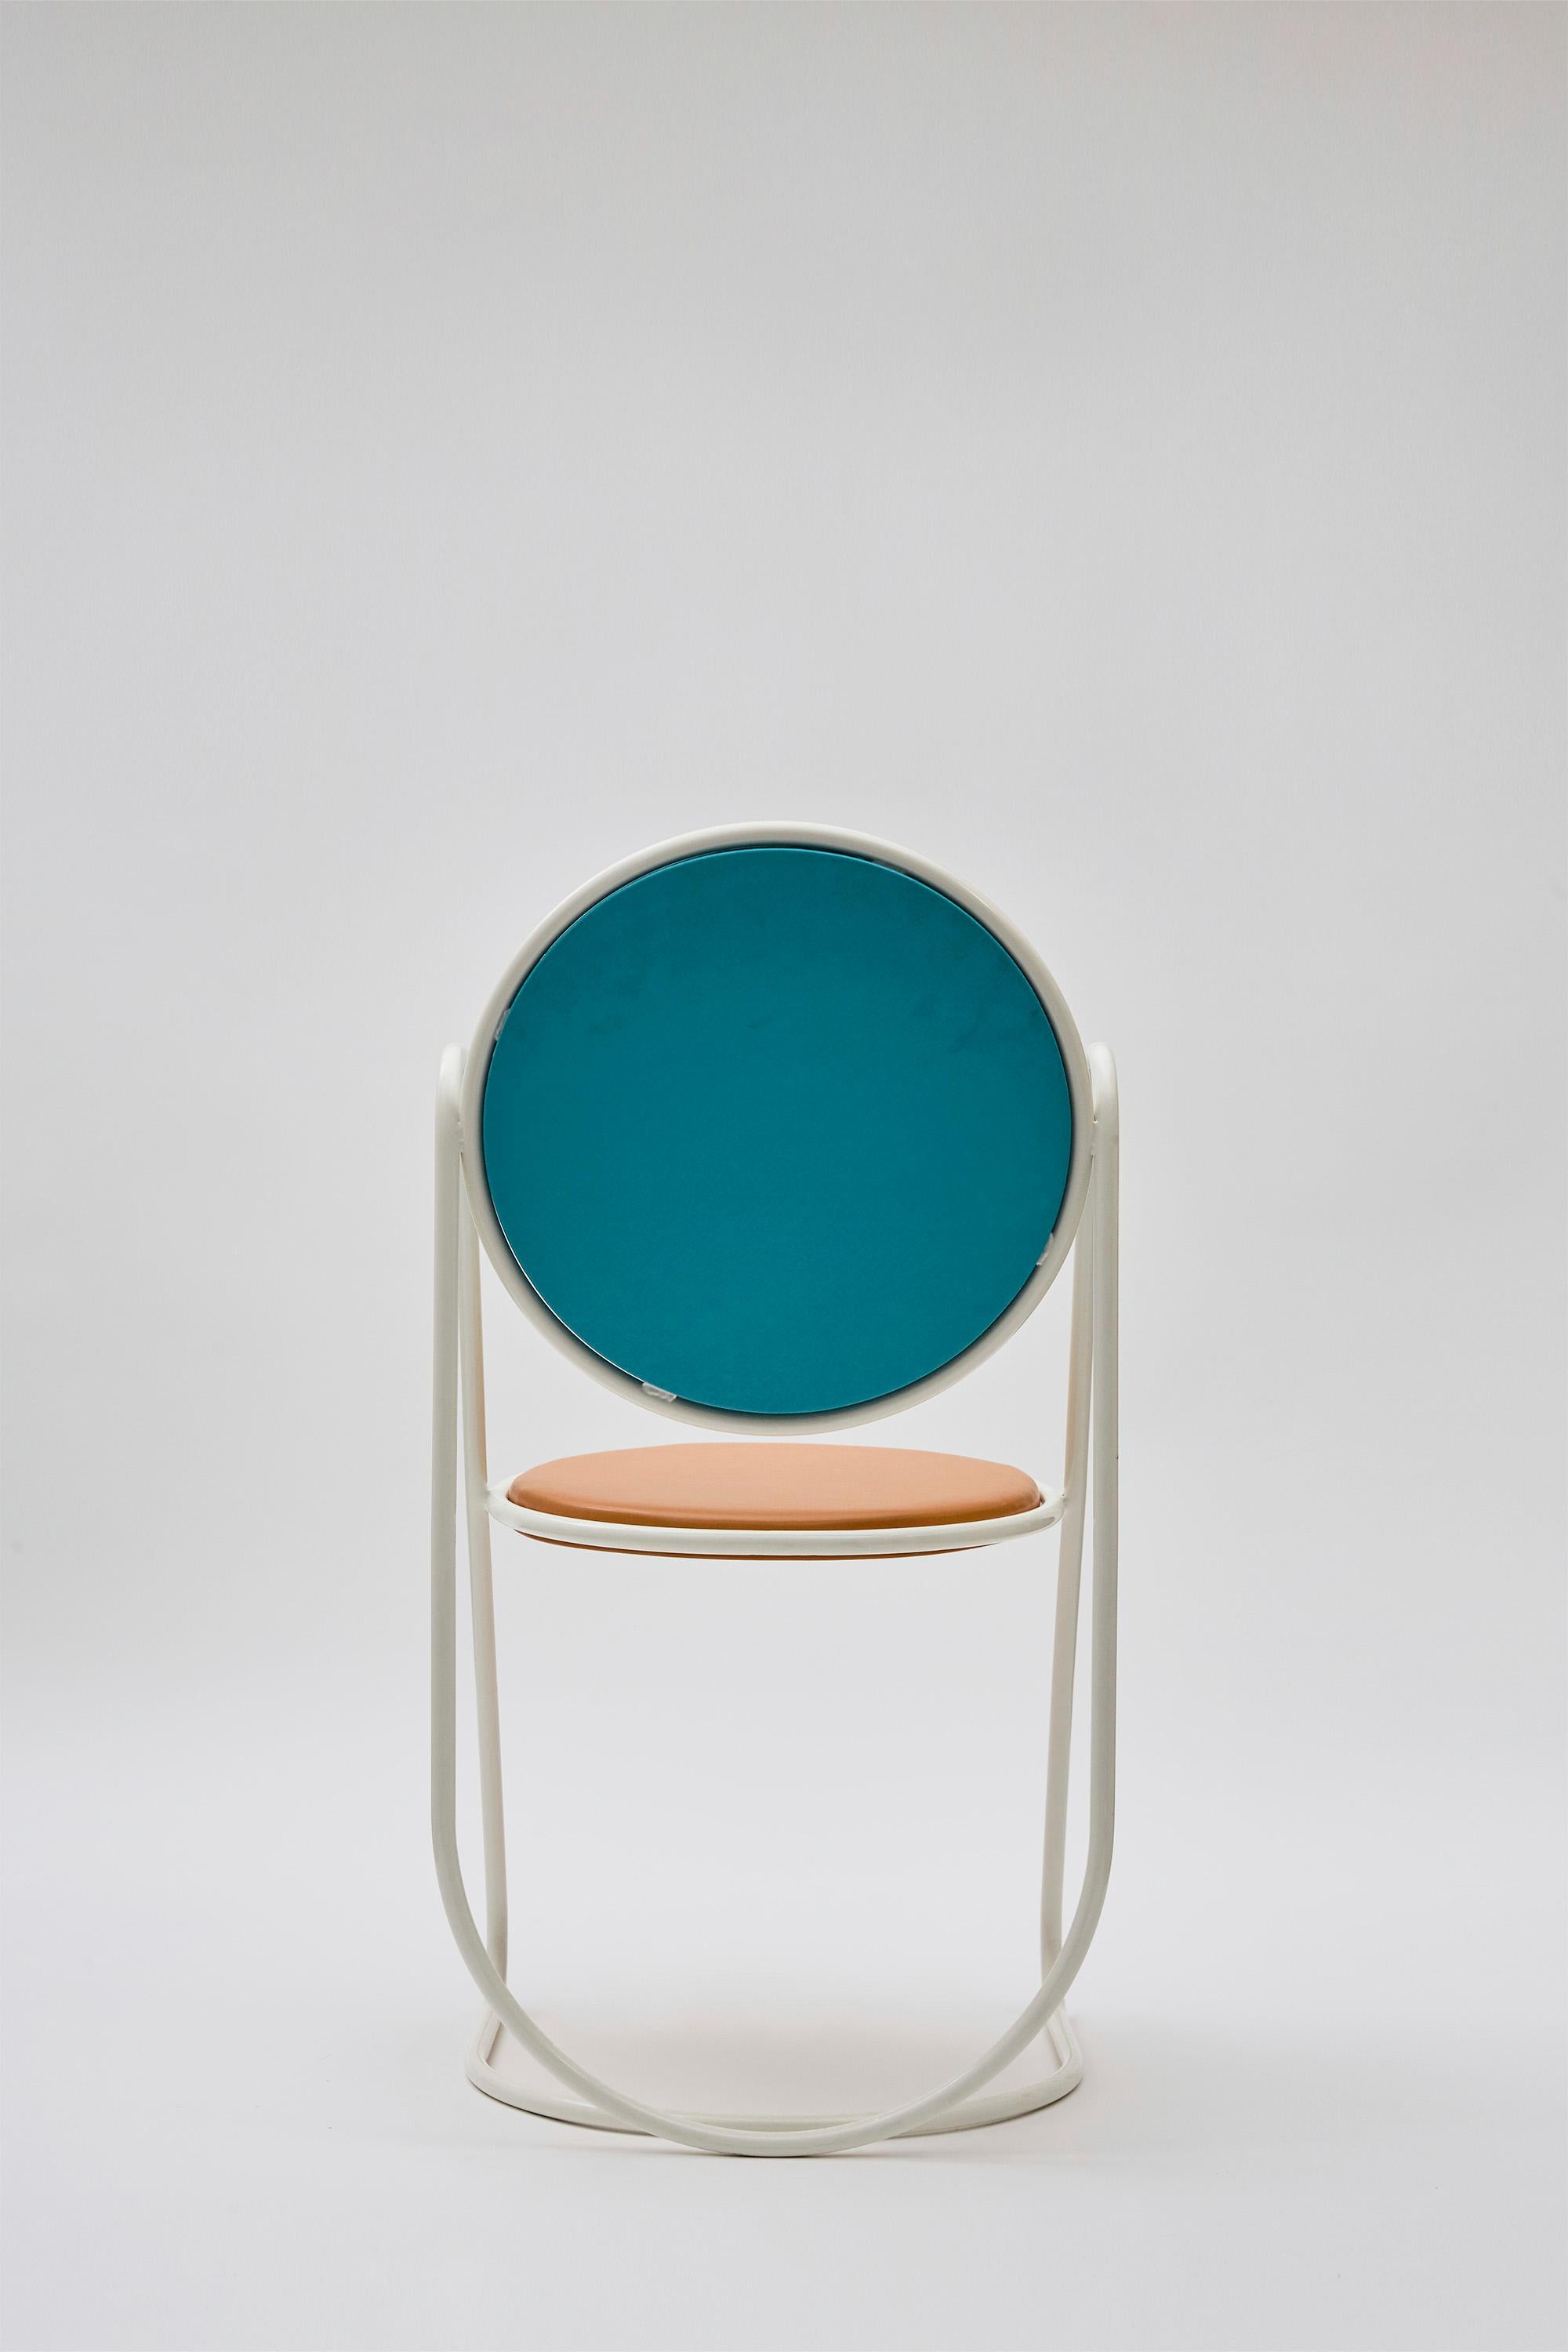 Italian U-Disk Chair, White, Light-Blue & Orange For Sale